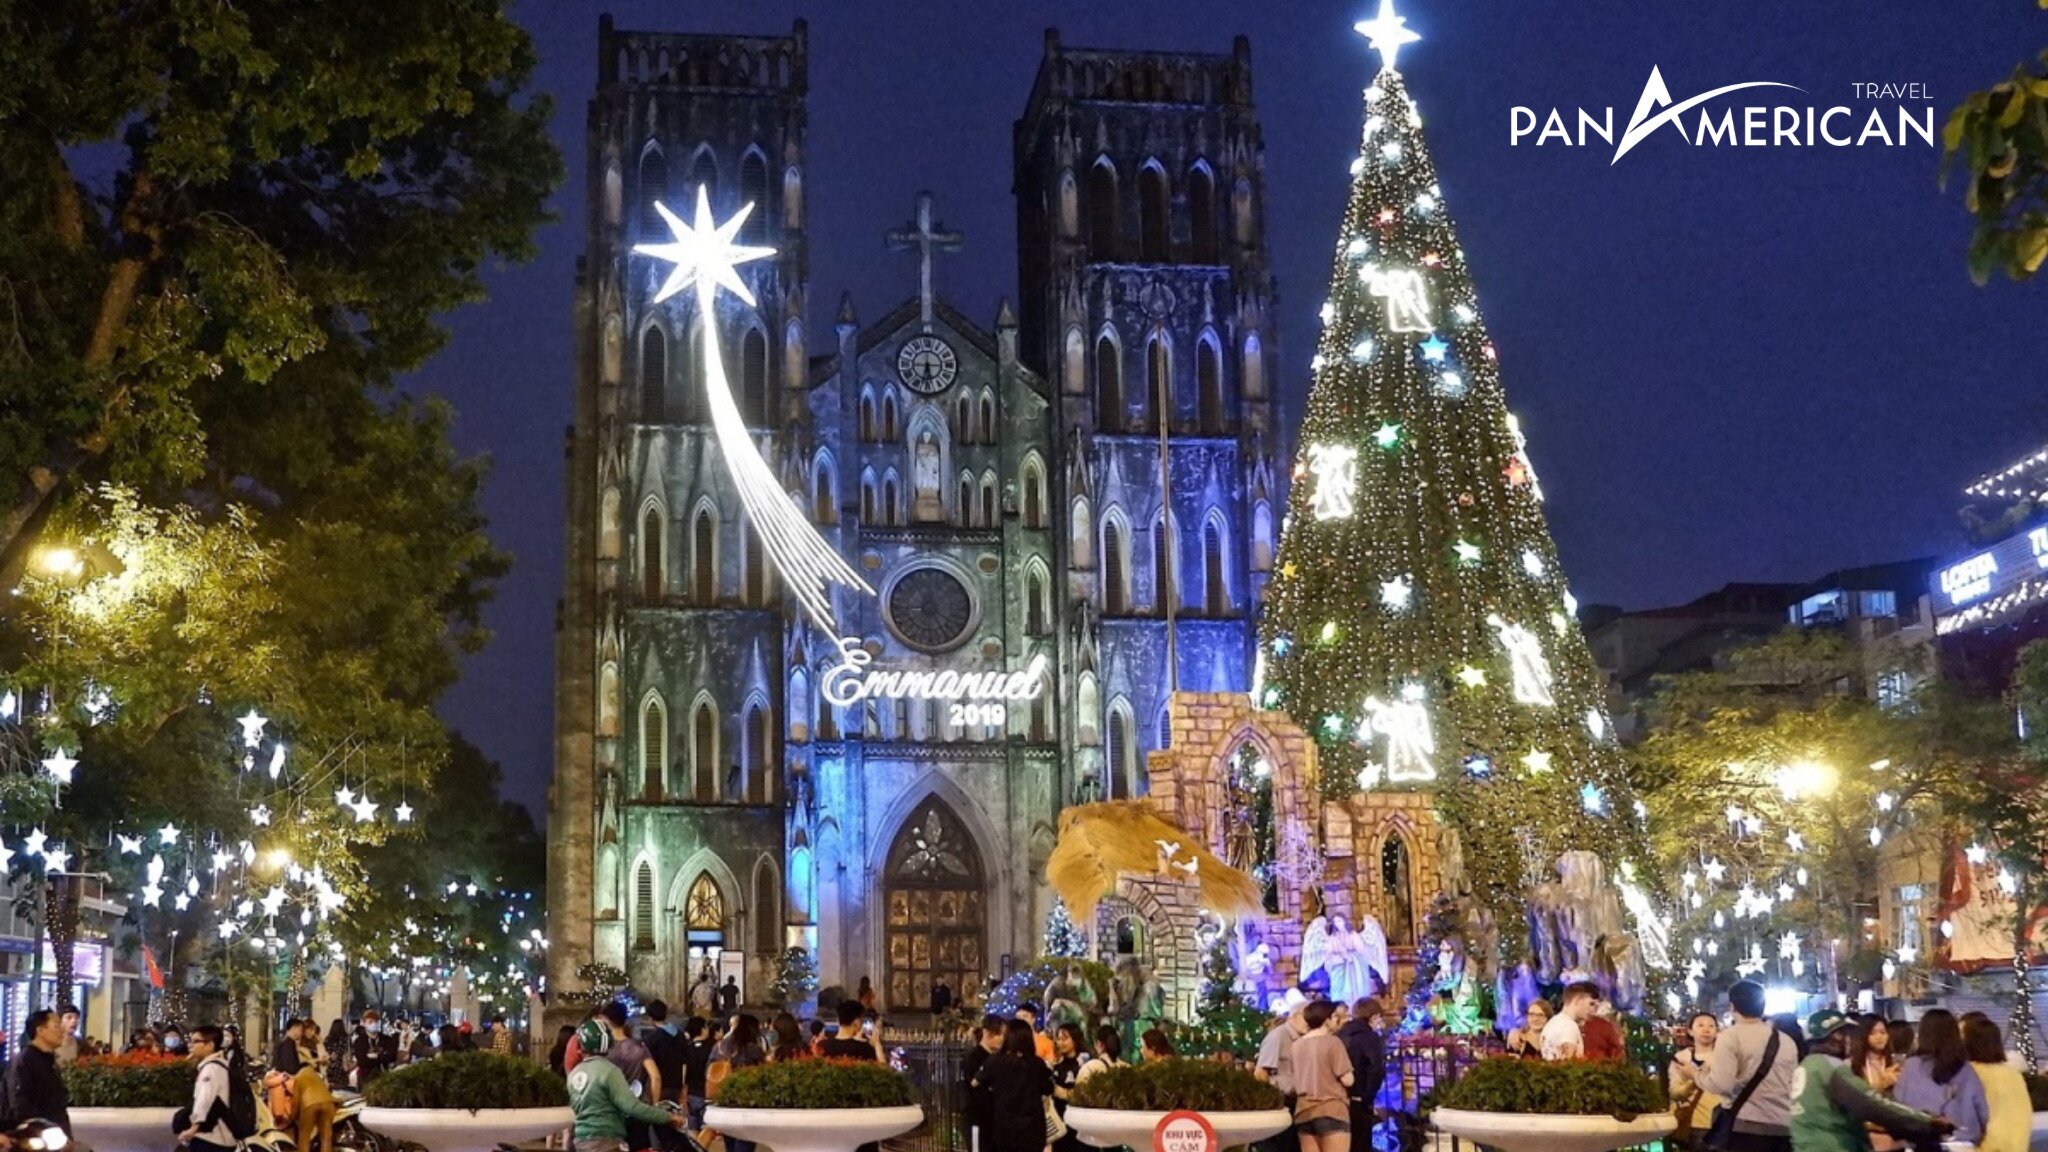 Cộng đồng Công giáo người Việt thường đổ về Nhà thờ lớn Hà Nội để cầu nguyện trong đêm Giáng sinh